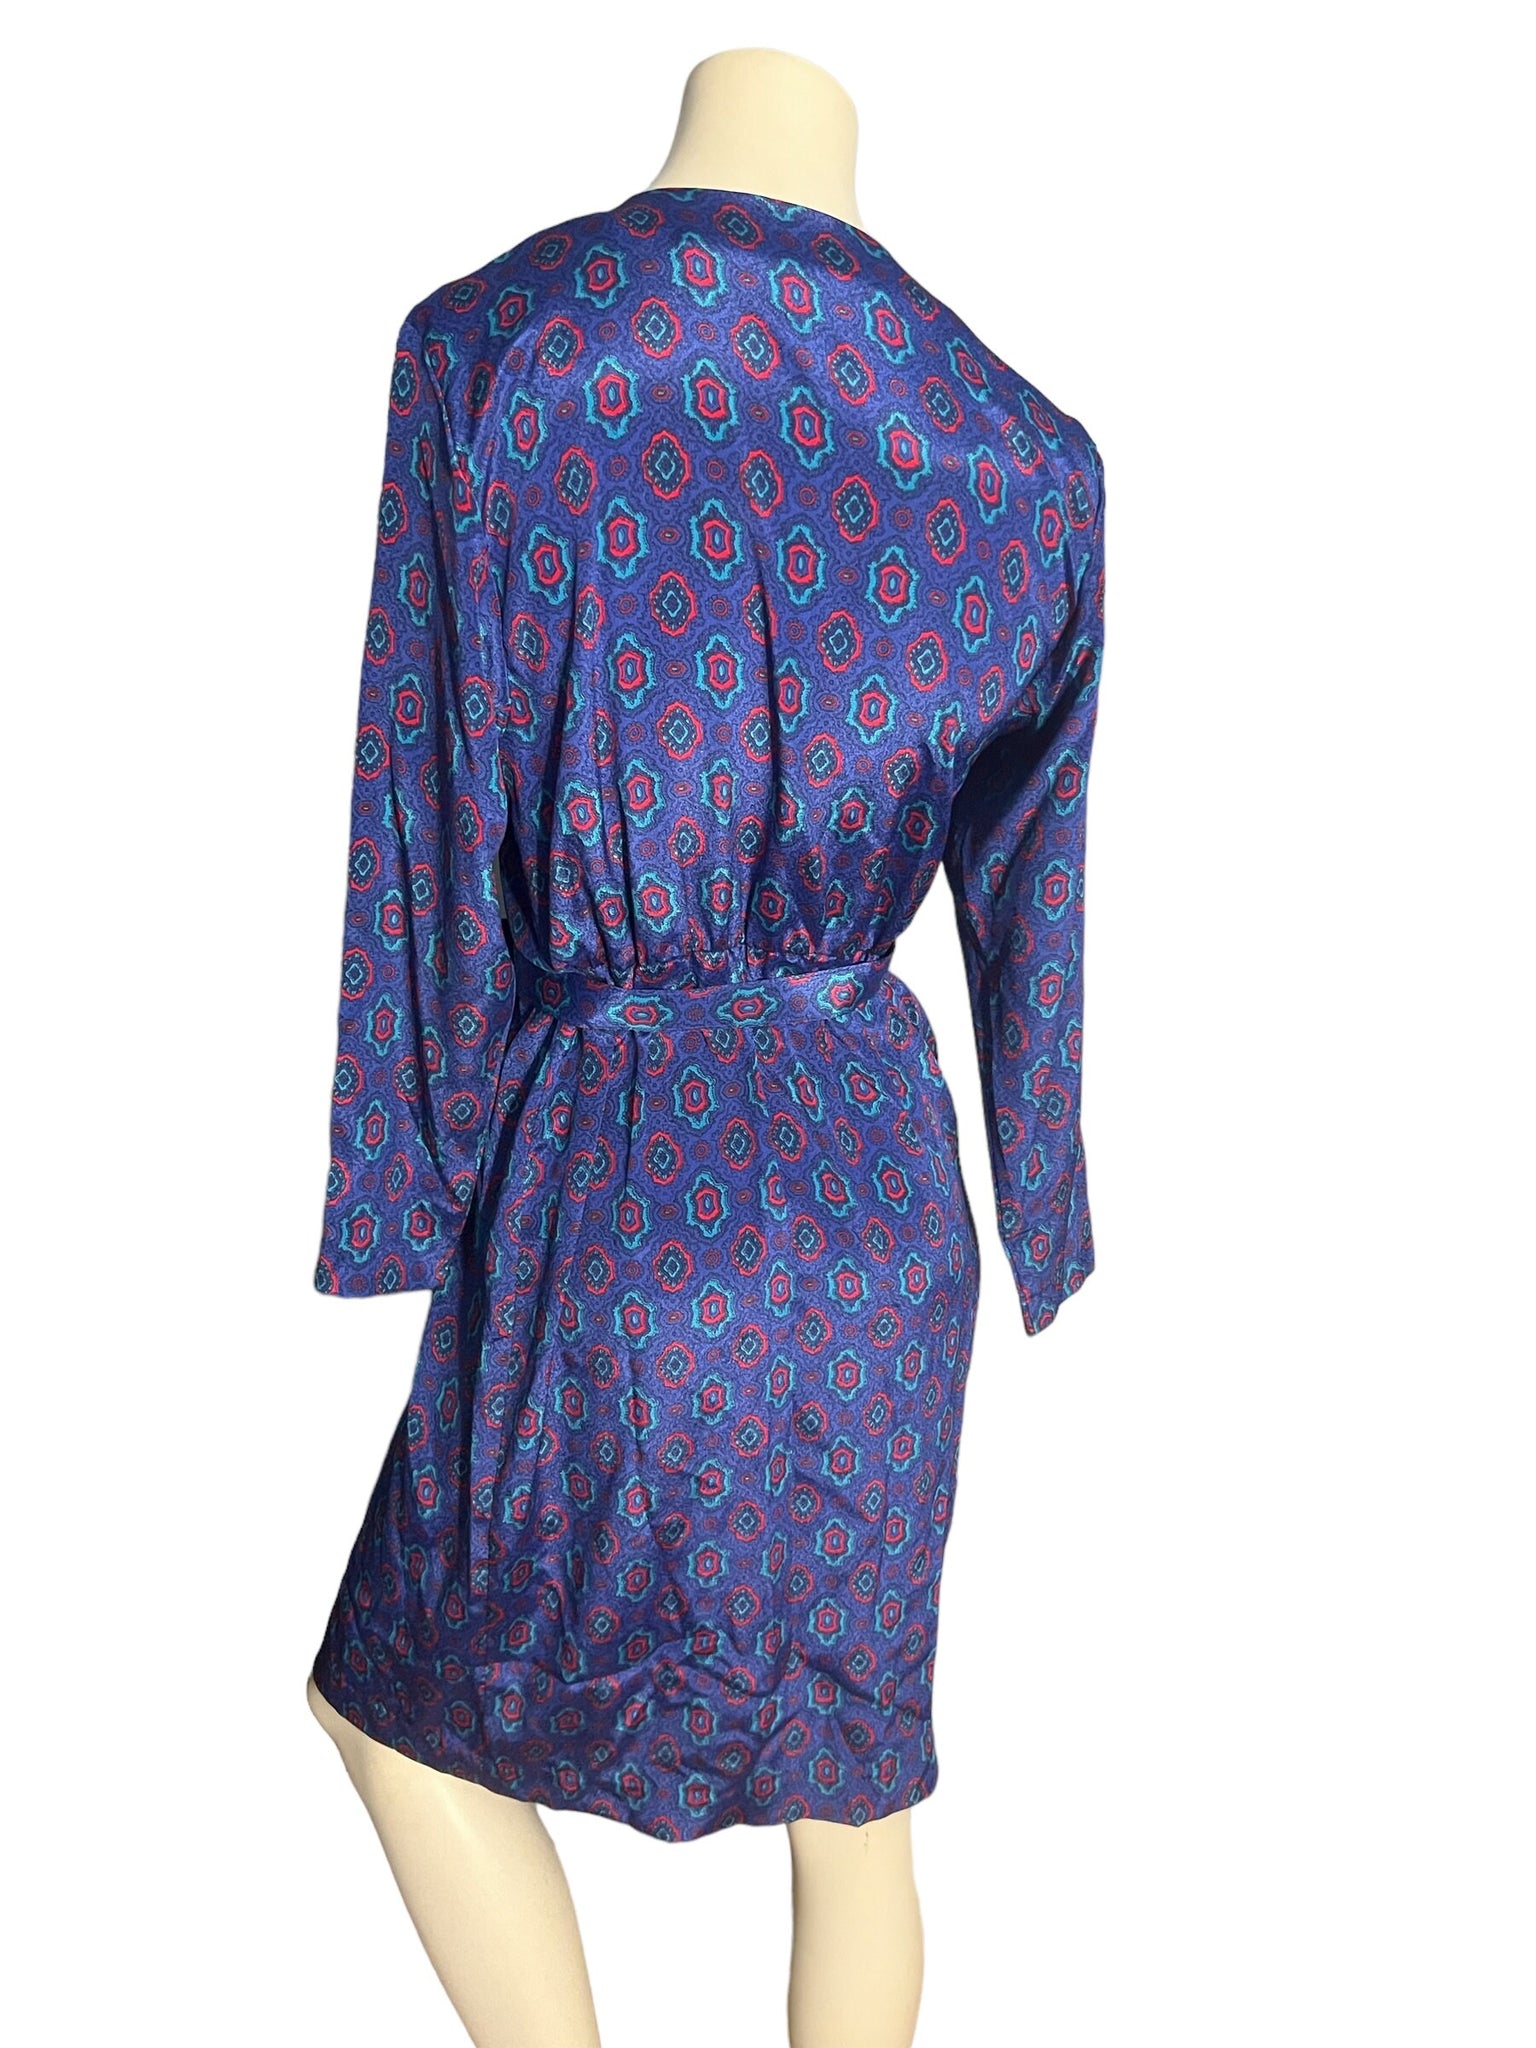 Vintage 80's blue dress 8 Samantha Stevens